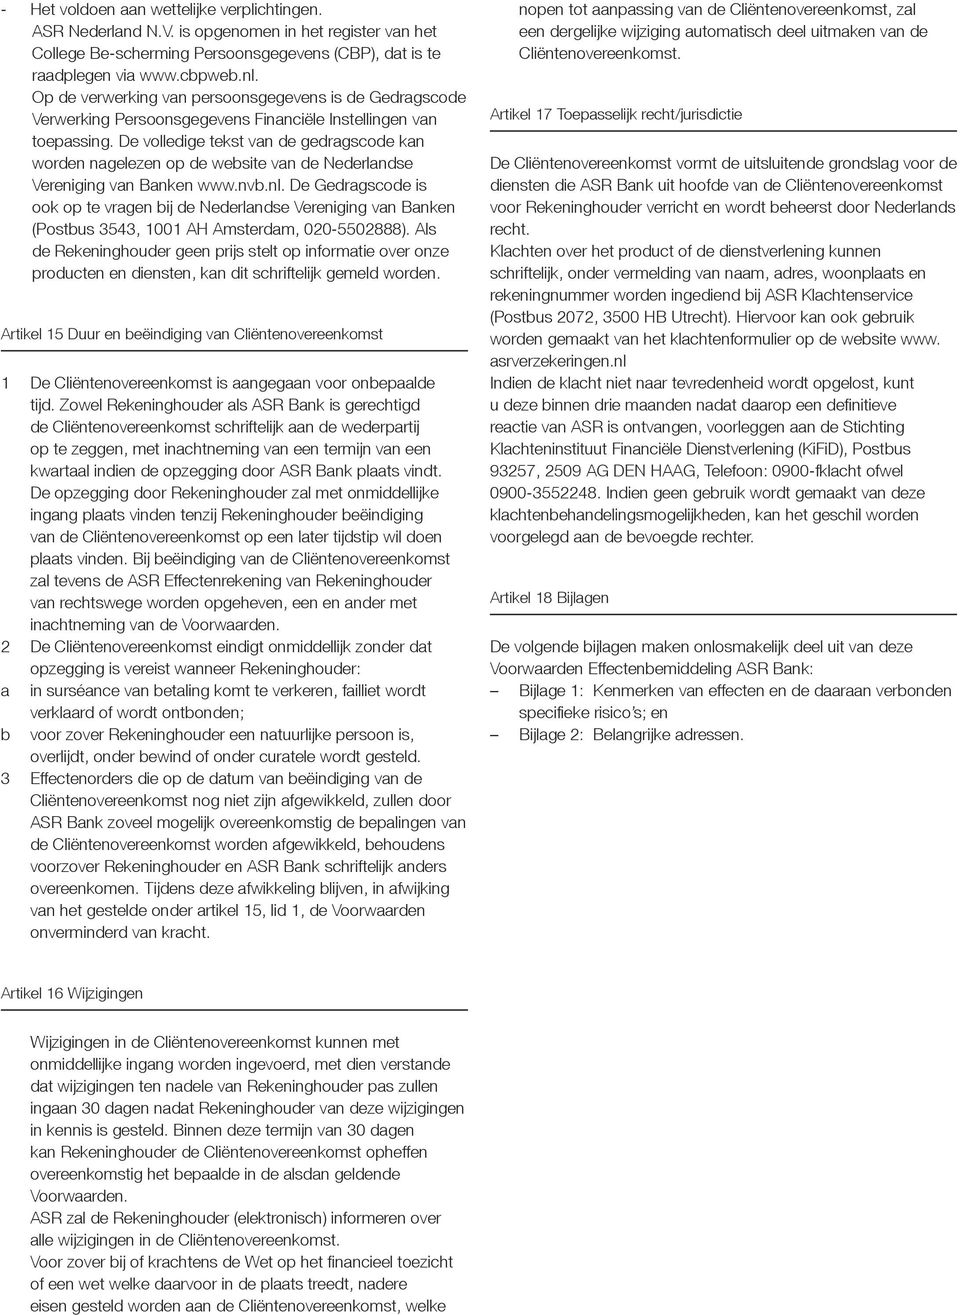 De volledige tekst van de gedragscode kan worden nagelezen op de website van de Nederlandse Vereniging van Banken www.nvb.nl.